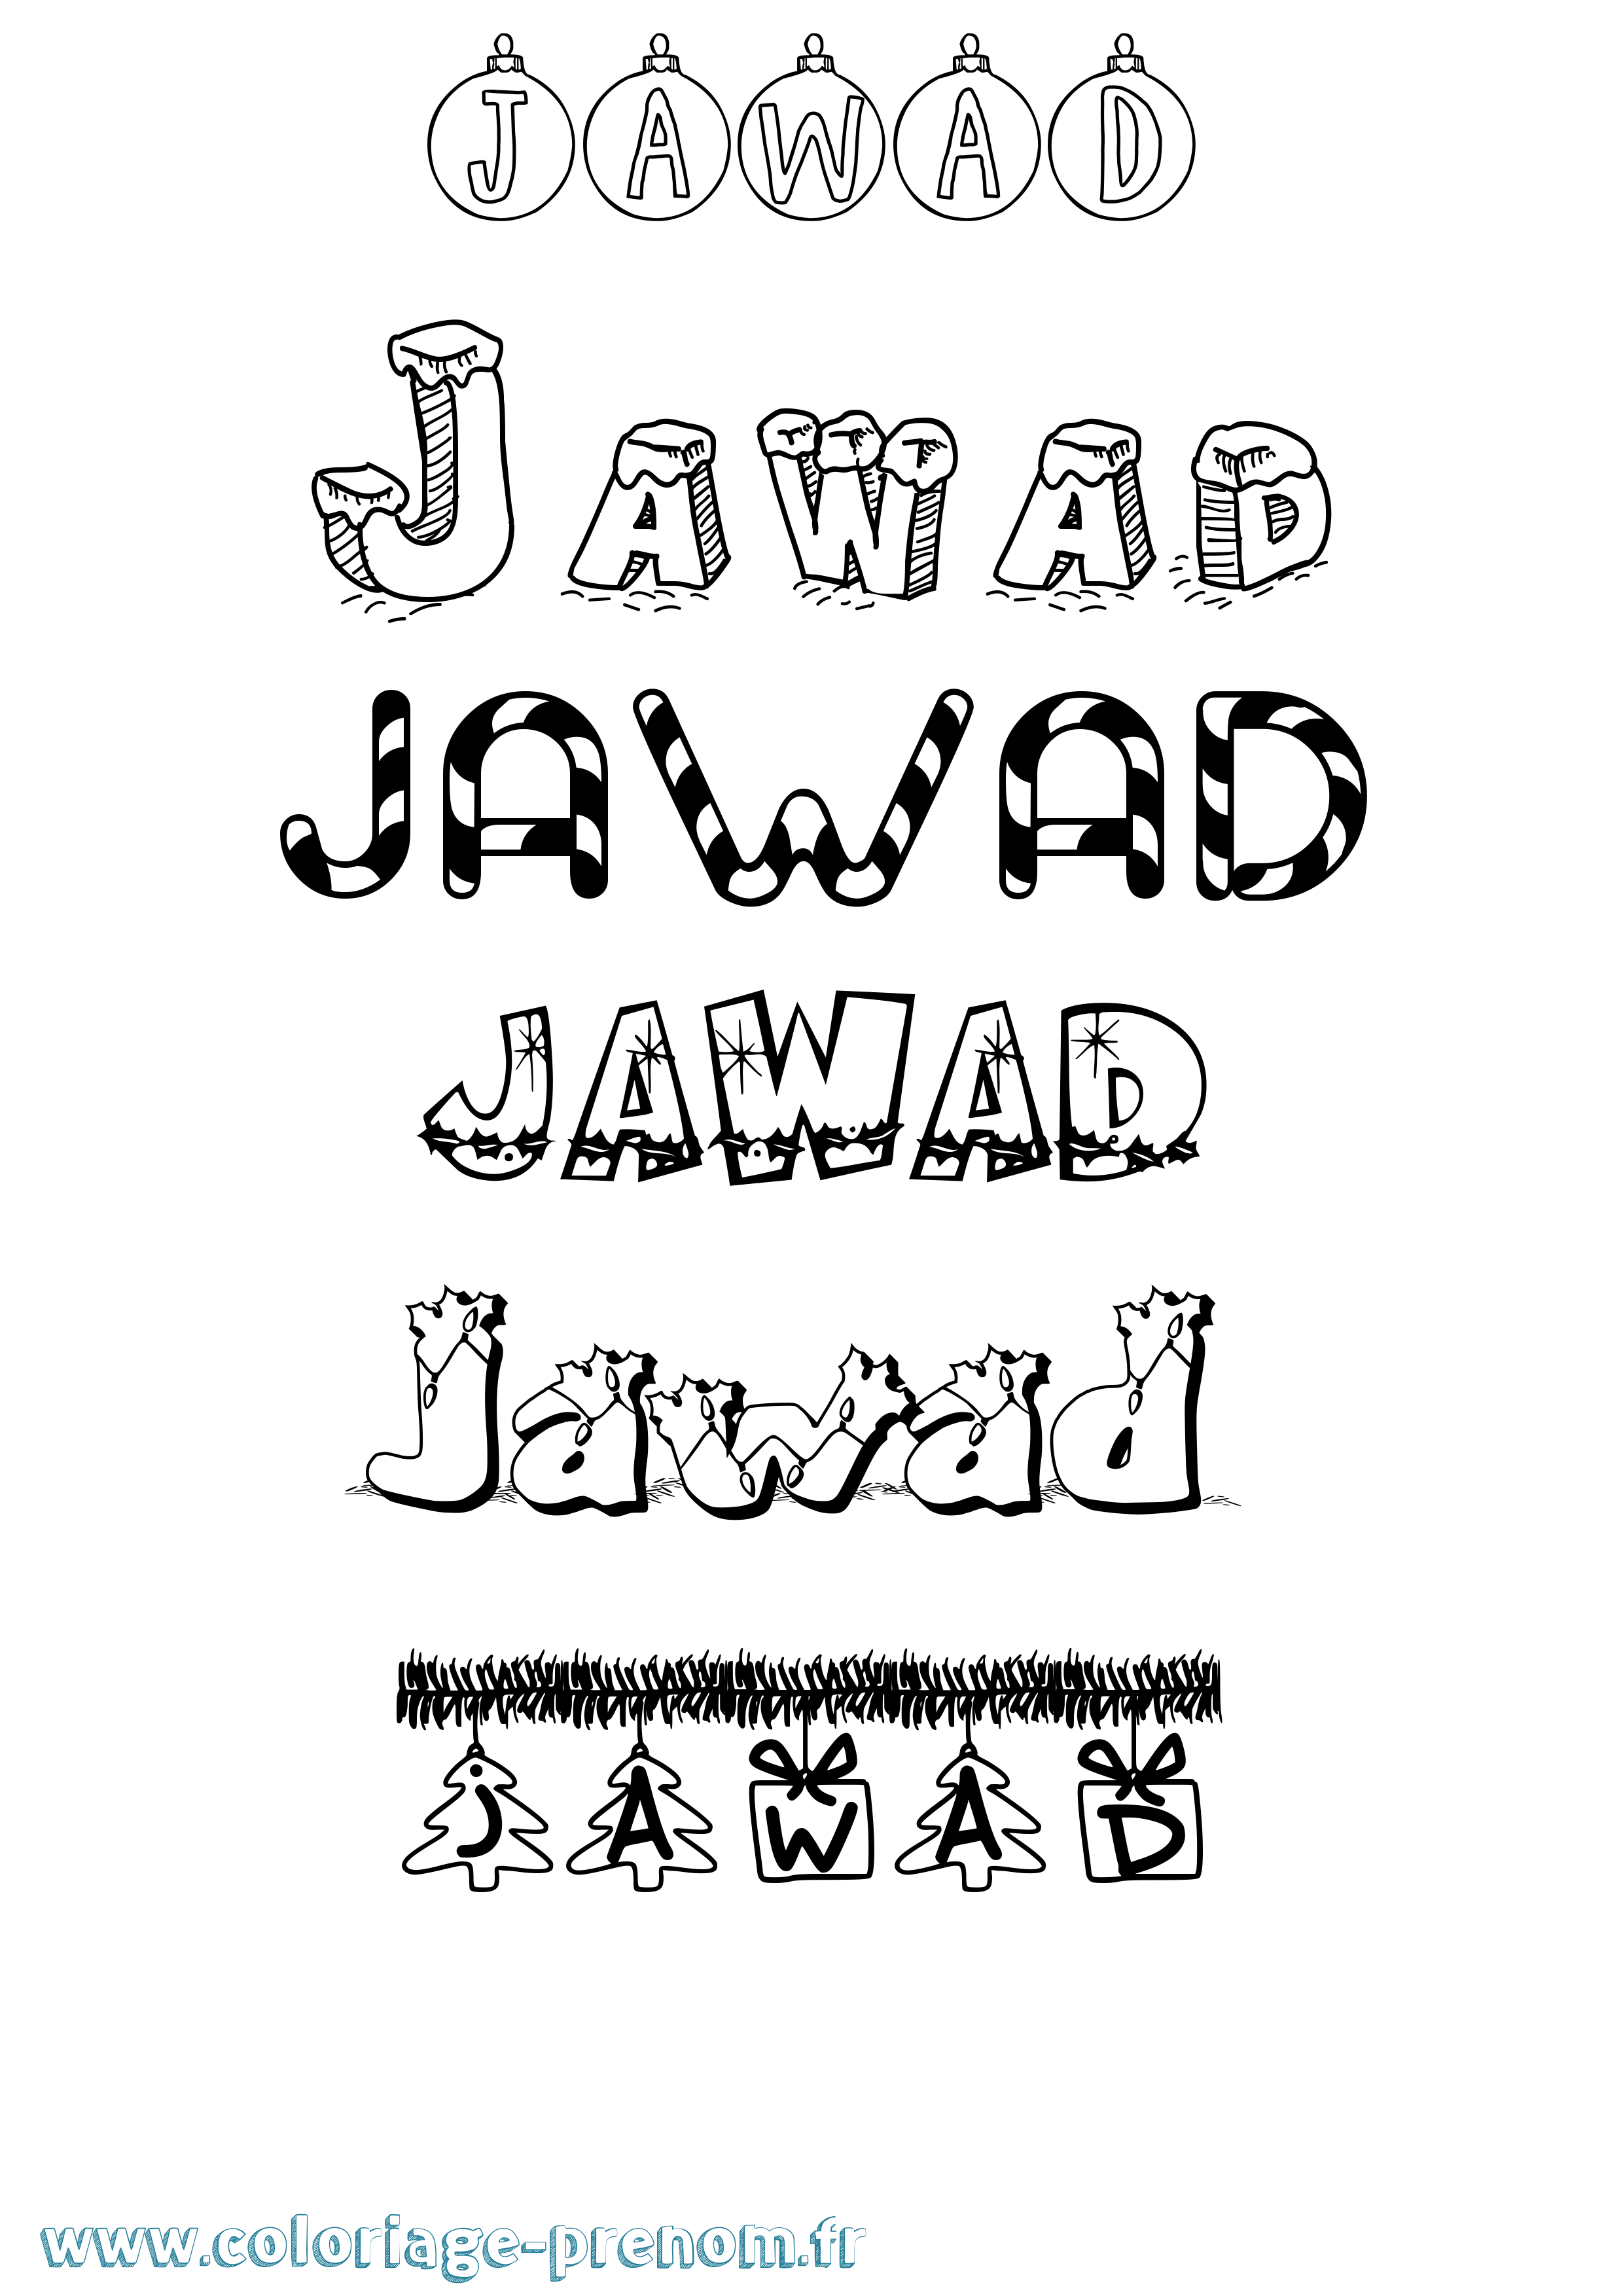 Coloriage prénom Jawad